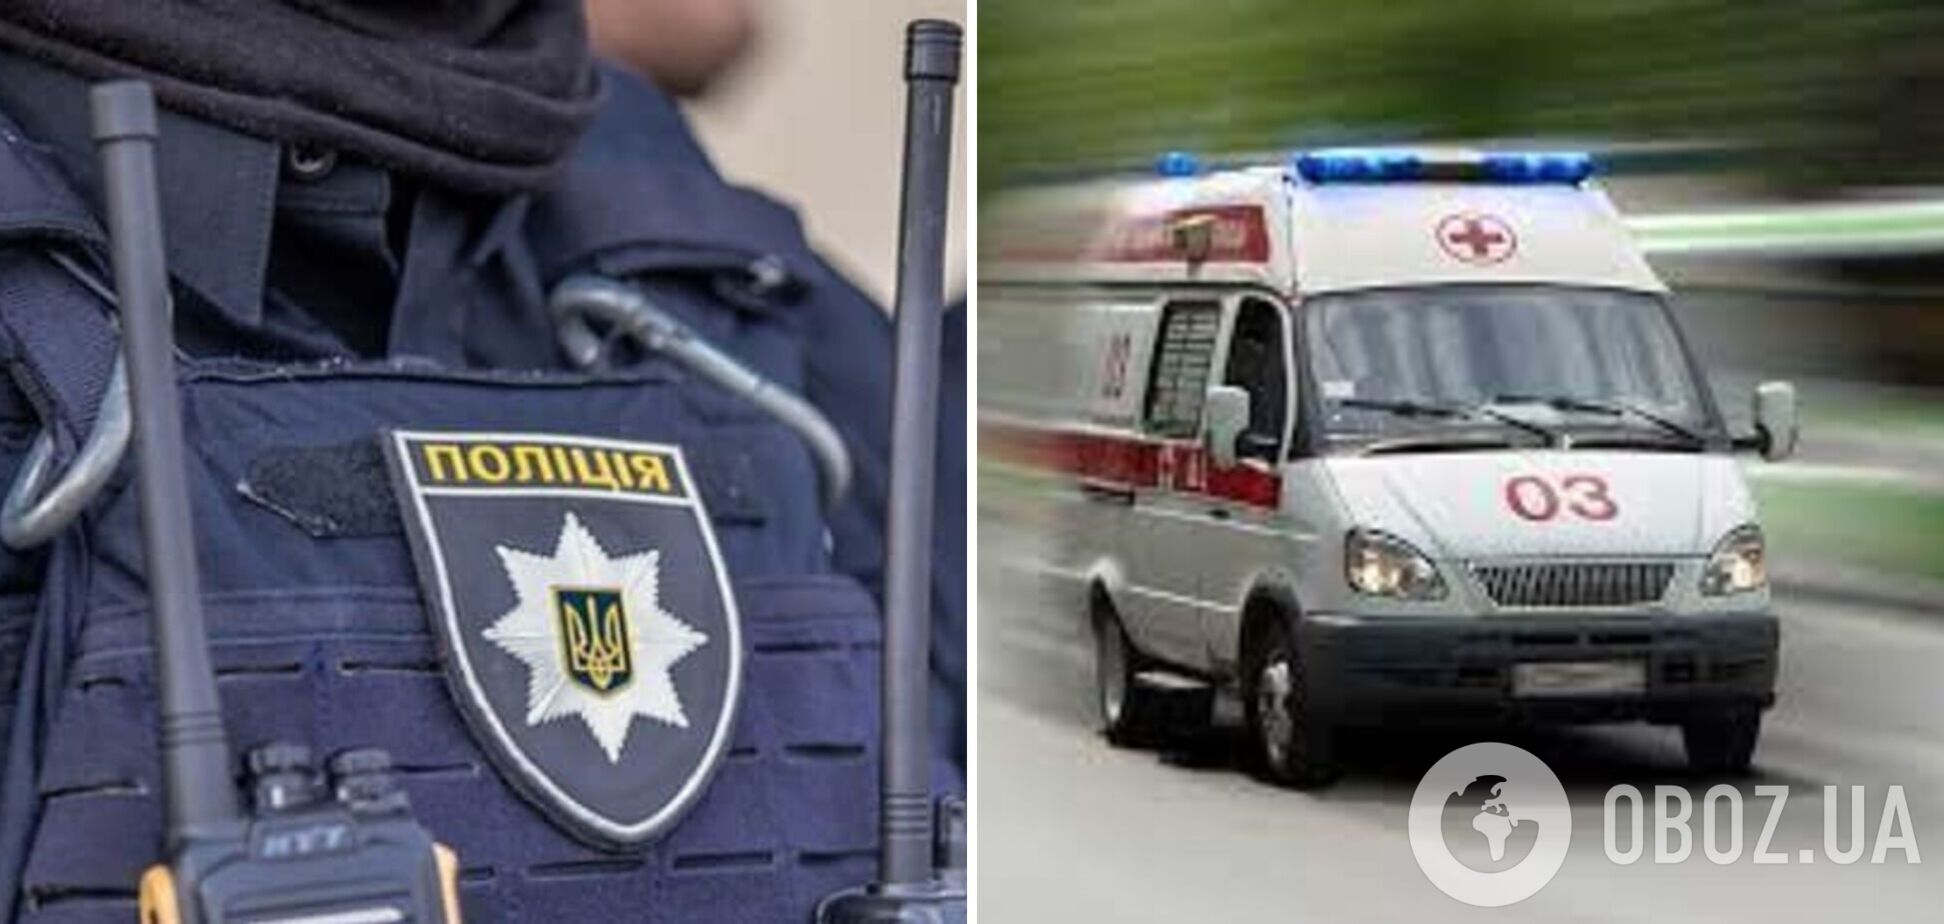 В Киеве полицейский получил ранения при задержании вооруженного злоумышленника: что известно